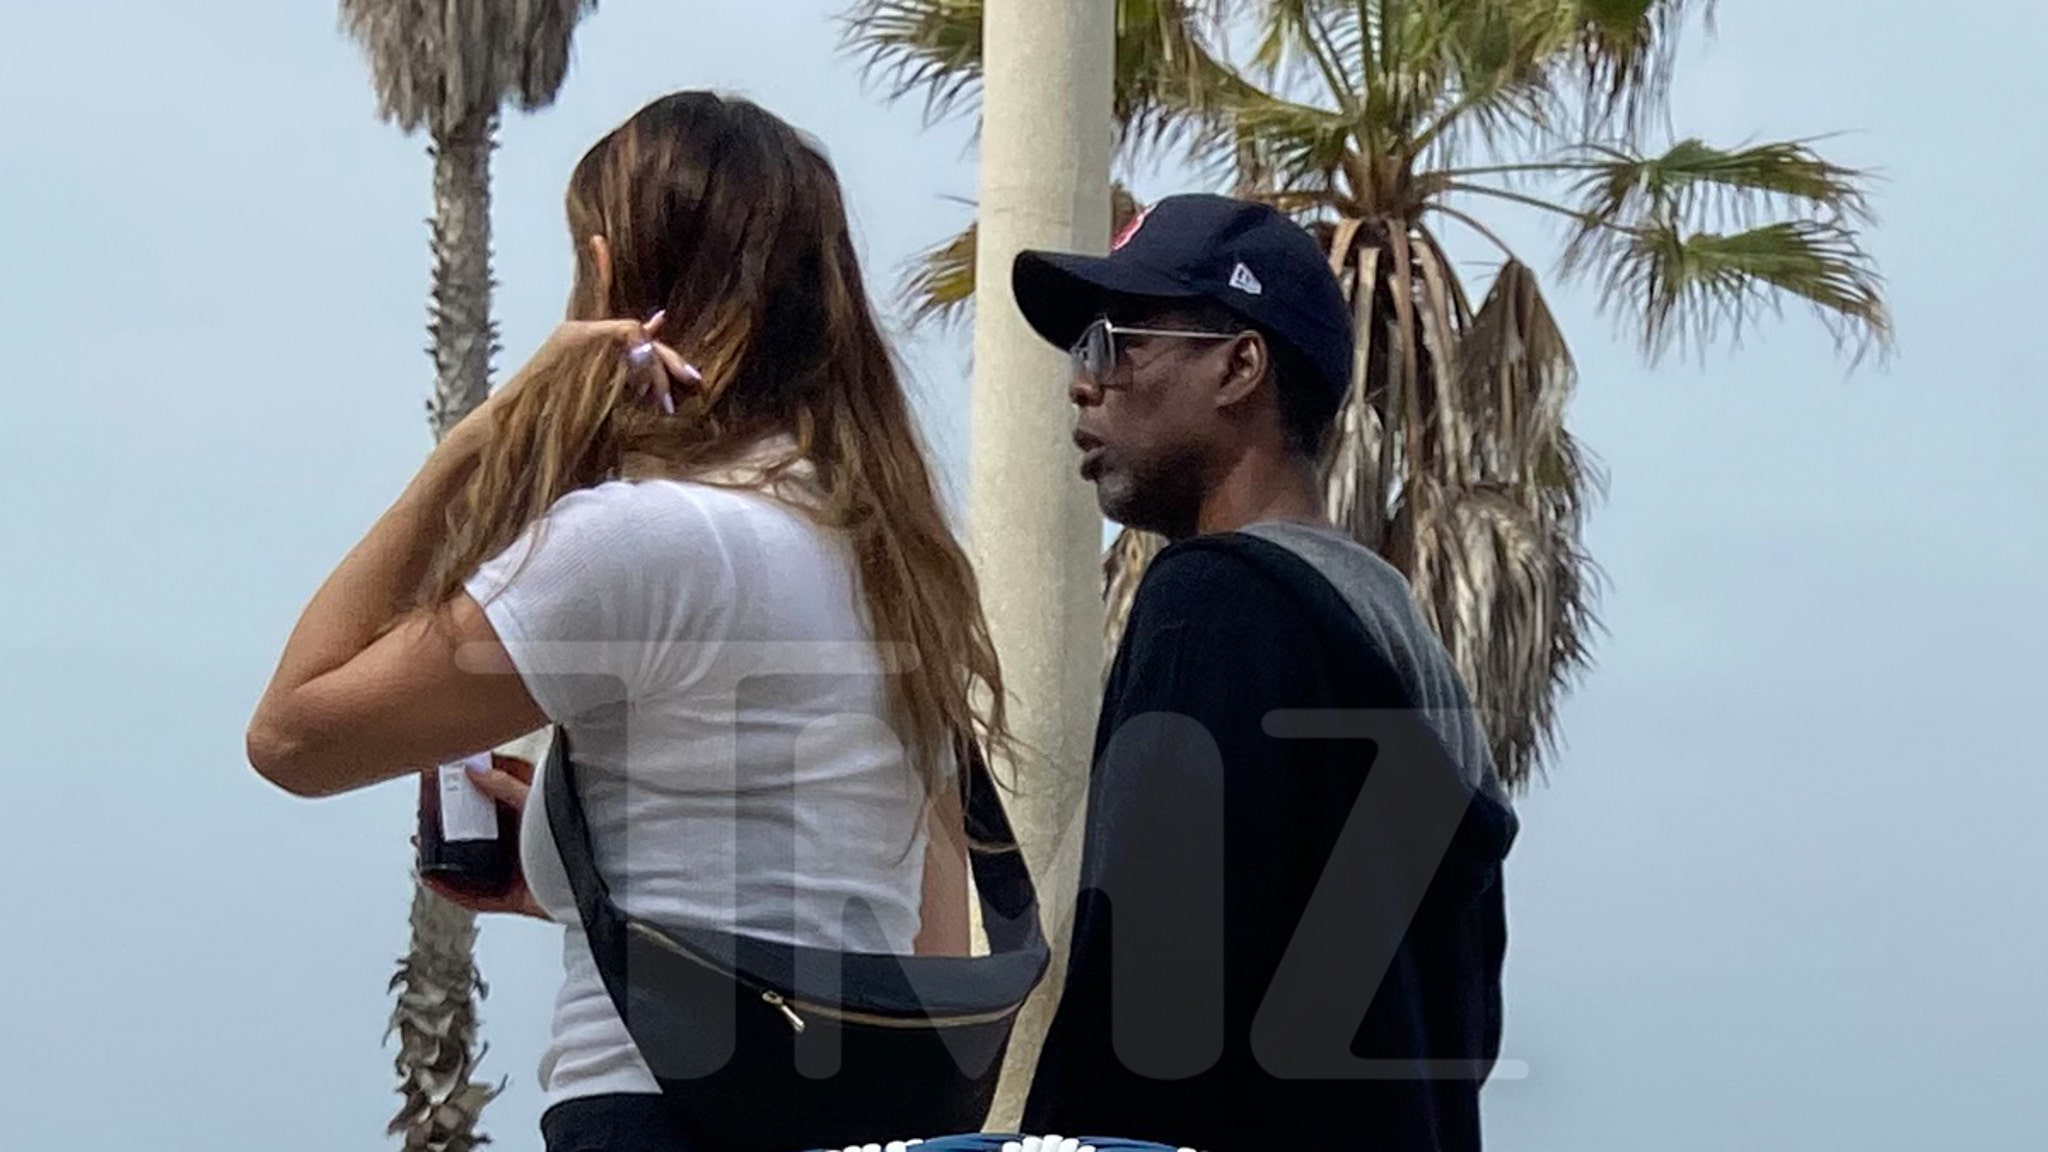 Chris Rock dan Like Bell Out piknik di Santa Monica, pasangan ini terlihat cukup serius